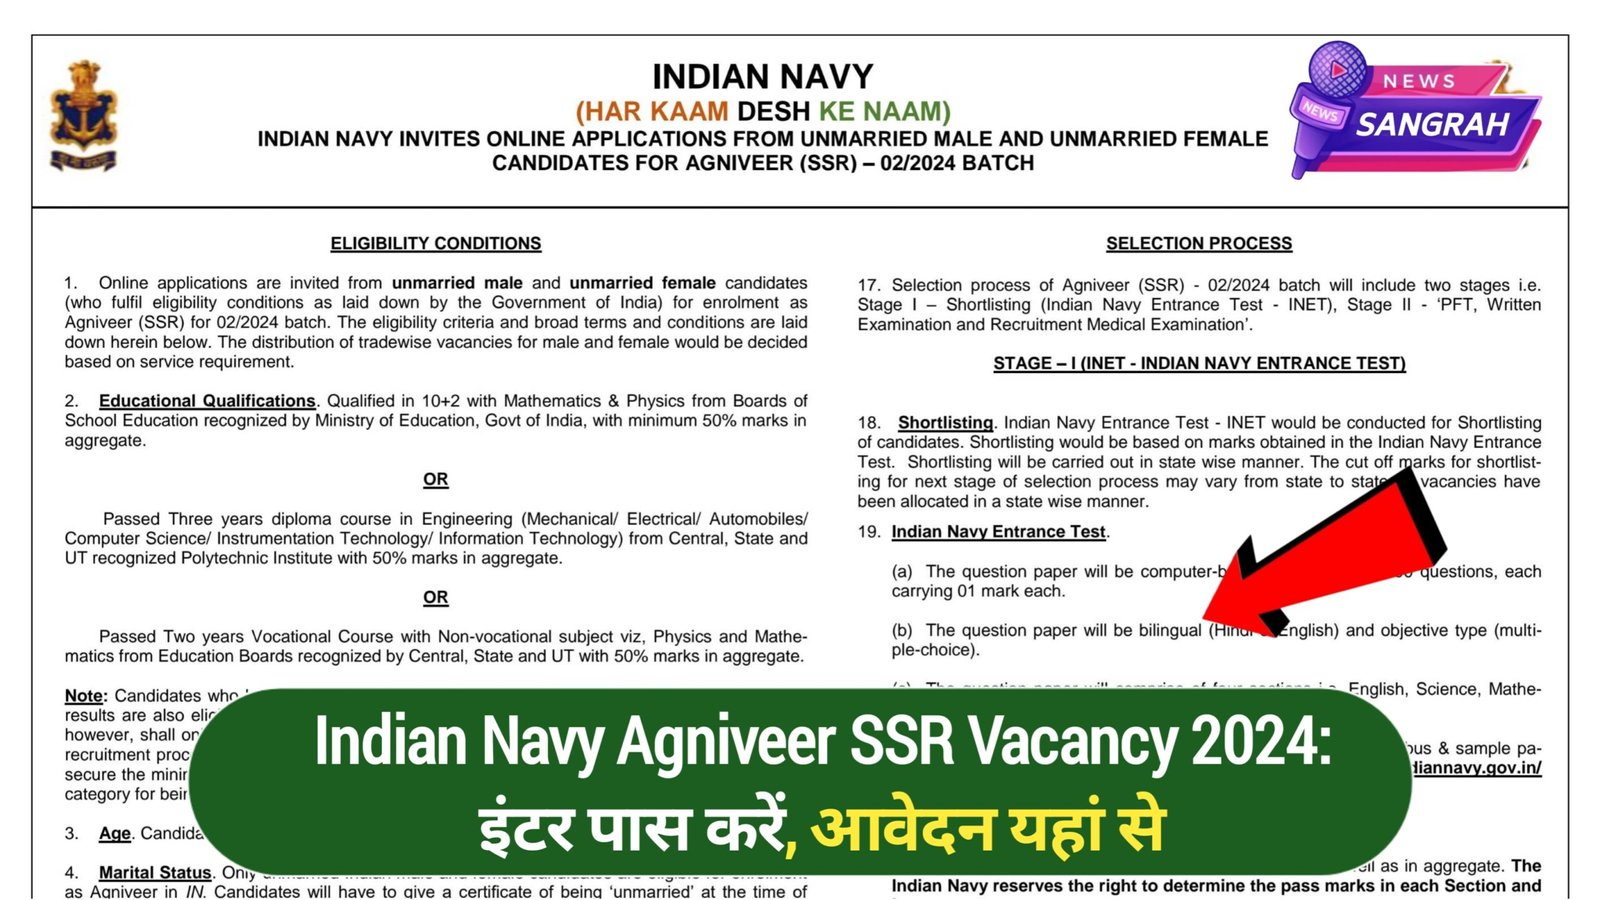 Indian Navy Agniveer SSR Vacancy 2024